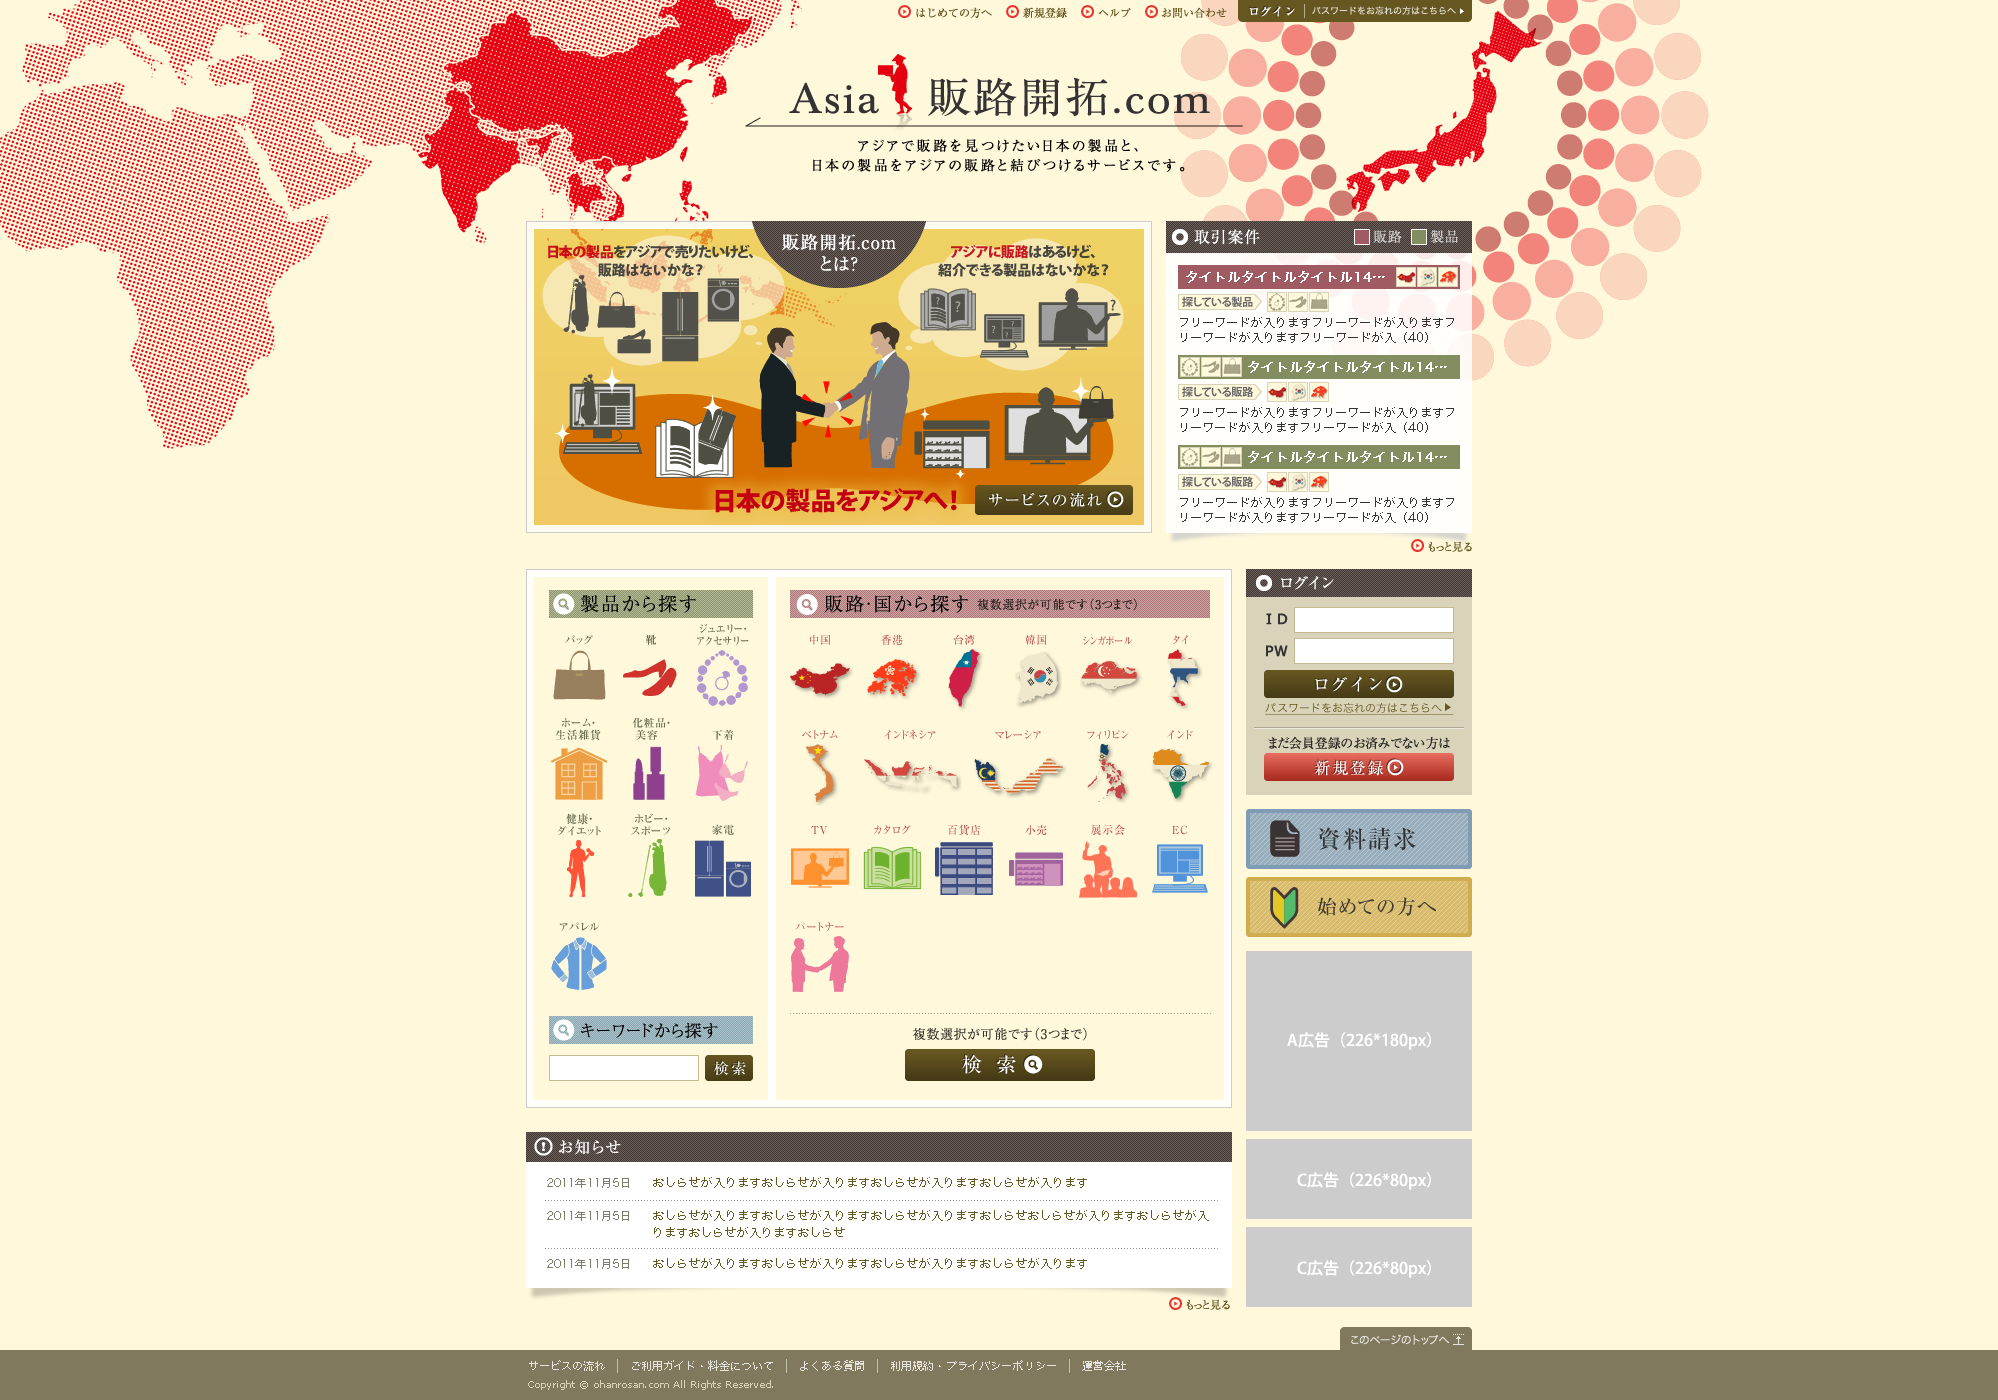 日本の製品とアジアの販路をつなげるマッチングサイト 『Asia 販路開拓.com』の無料登録をスタート